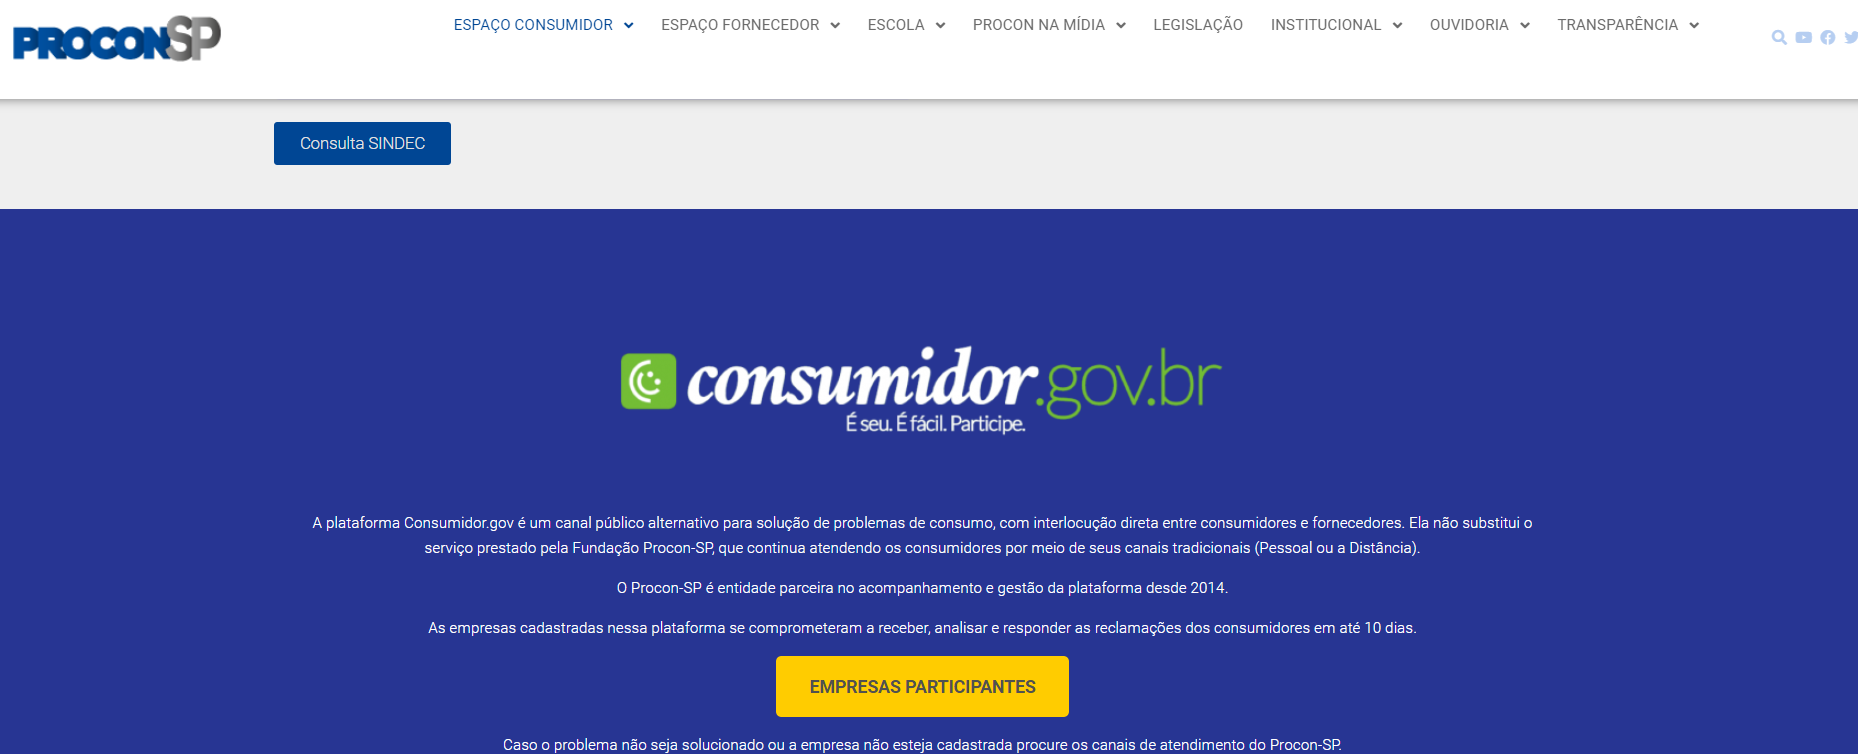 site-consumidor-gov-br-para-pesquisa-de-empresas